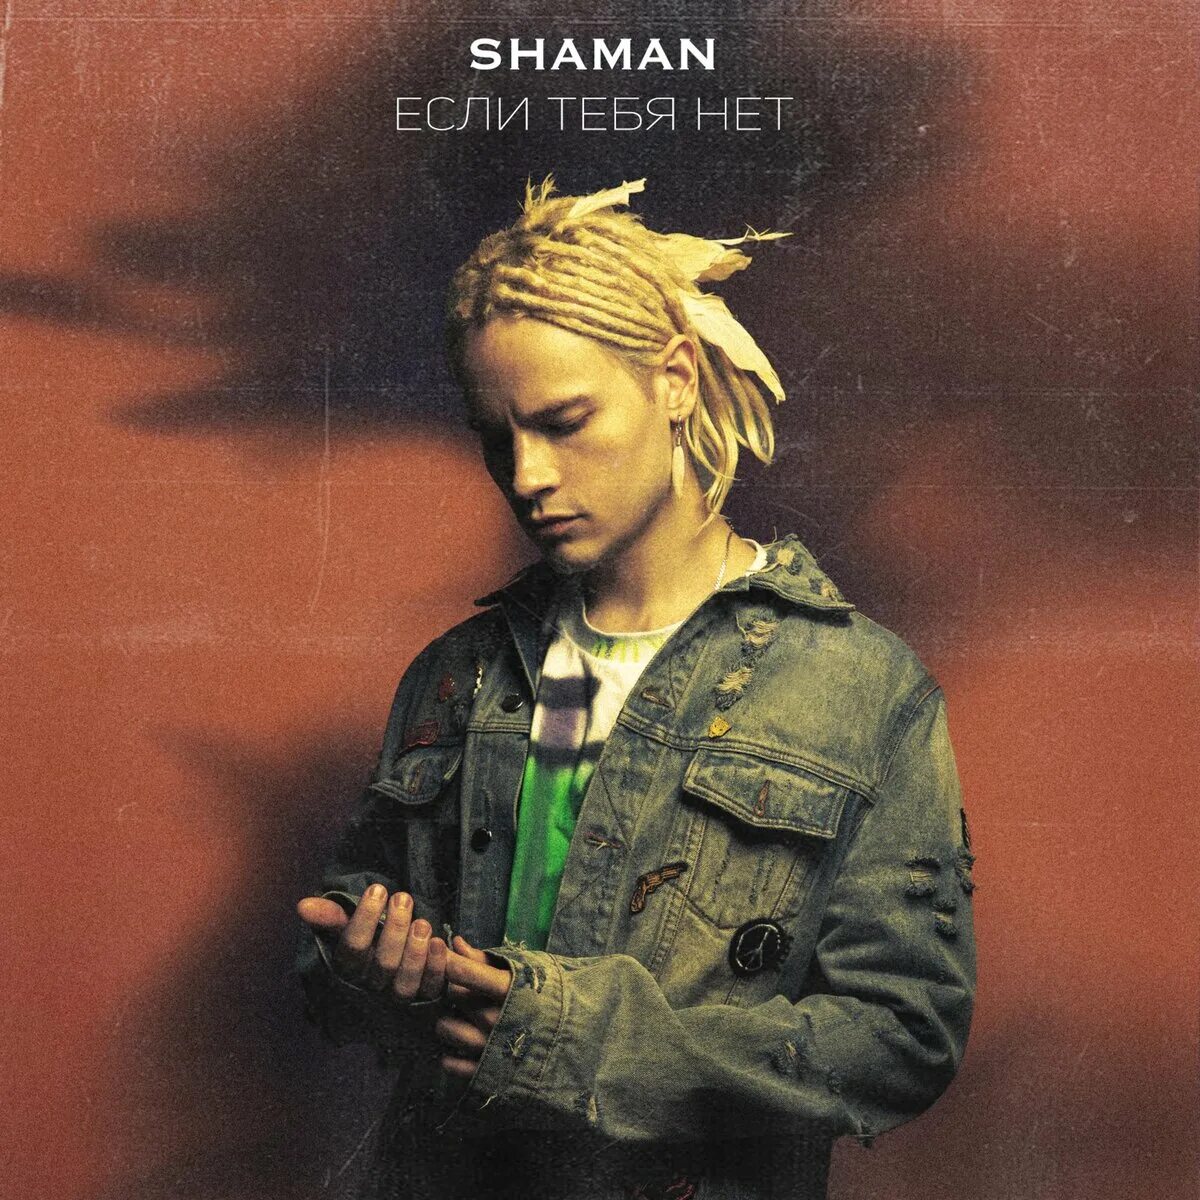 Шаман премьера песни. Shaman (певец). Если тебя нет Shaman. Shaman певец обложки альбомов. Shaman певец в молодости.